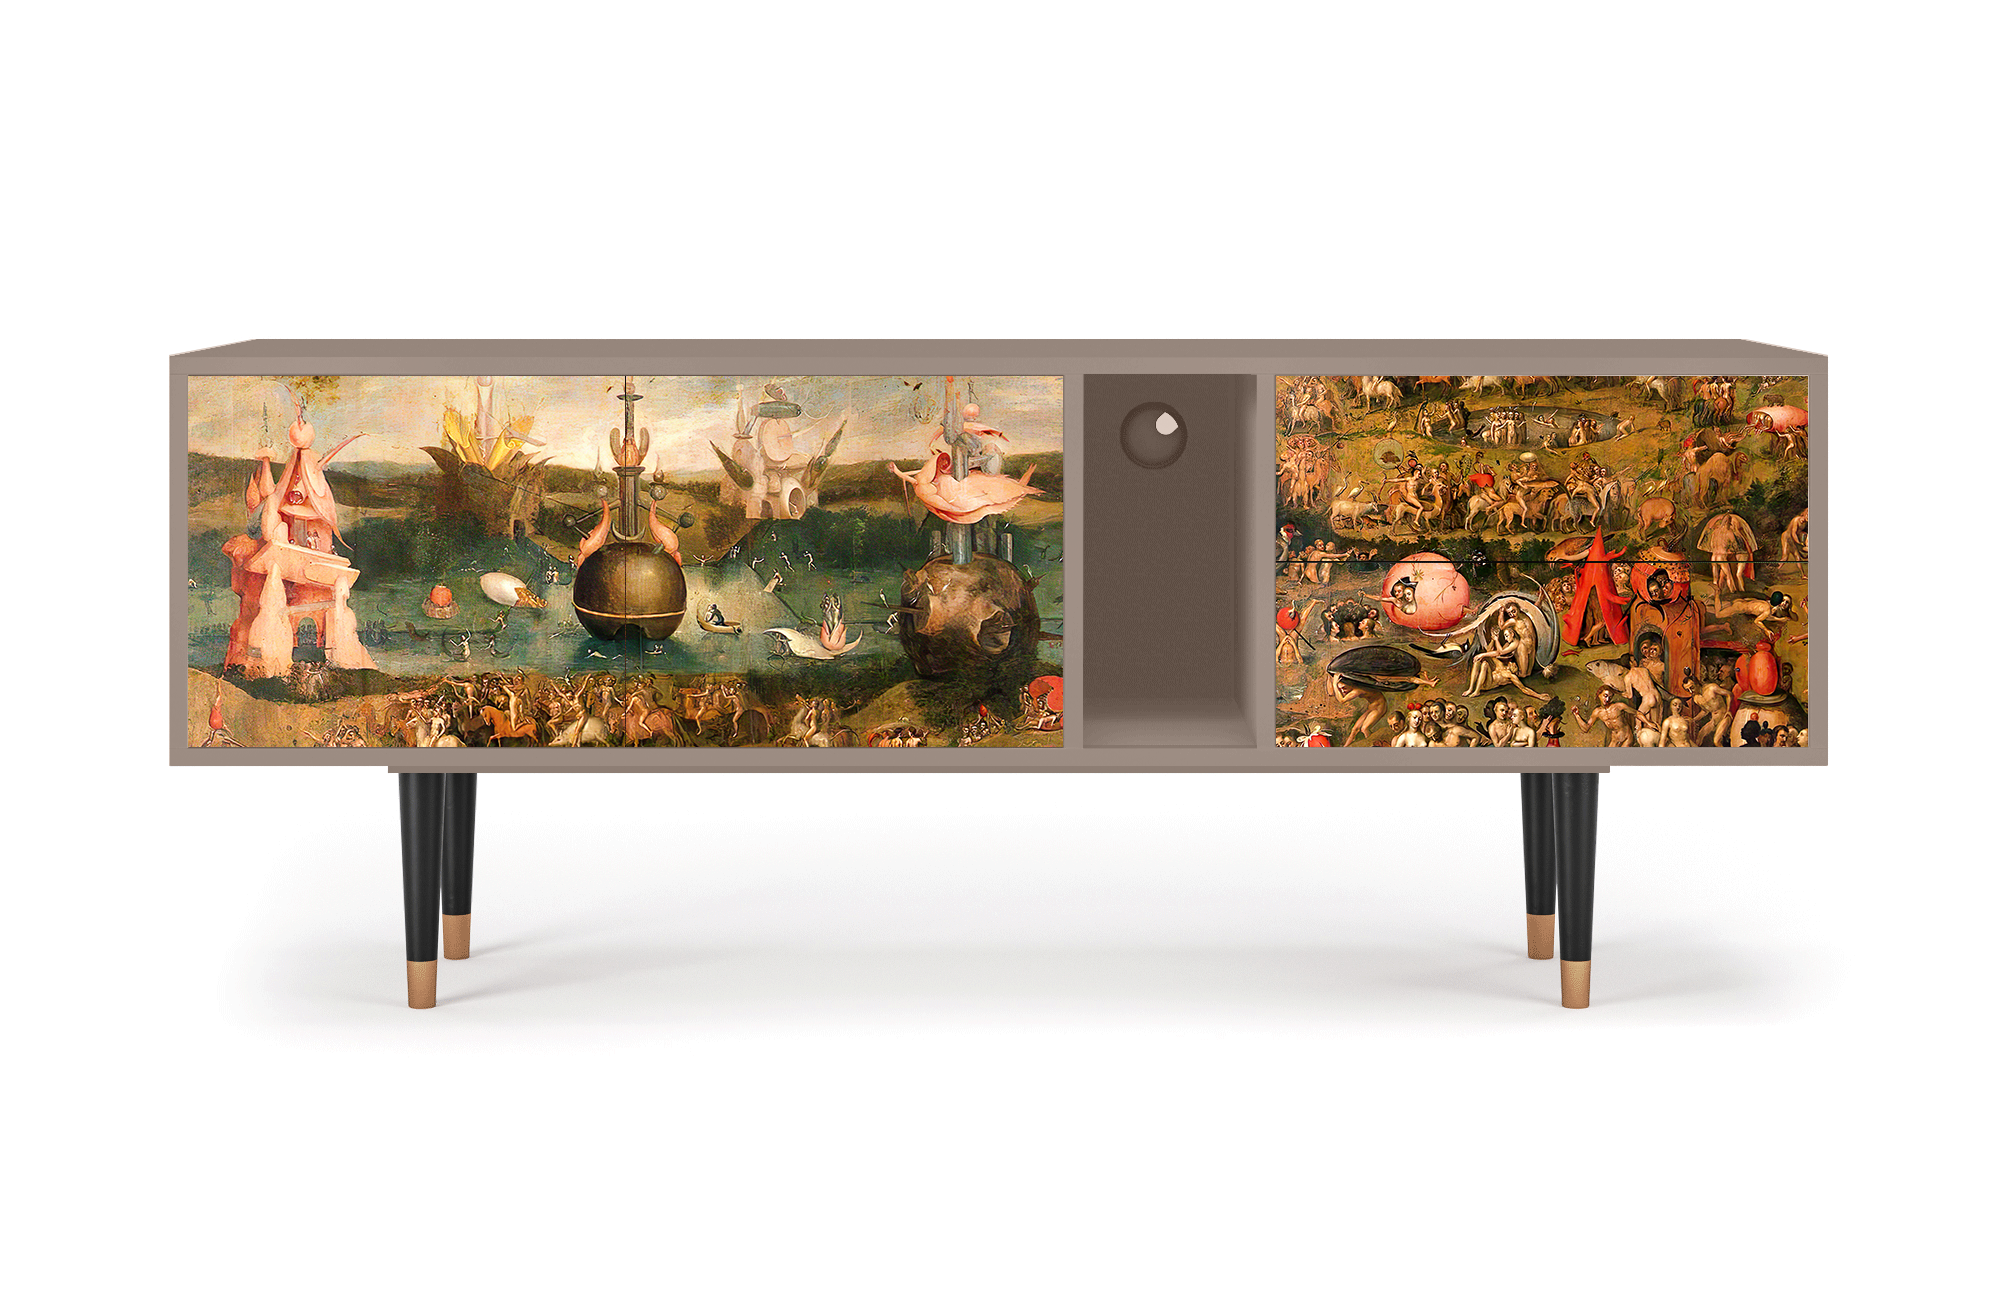 ТВ-Тумба - STORYZ - T1 Garden of Earthly Delights by Hieronymus Bosch, 170 x 69 x 48 см, Бежевый - фотография № 2